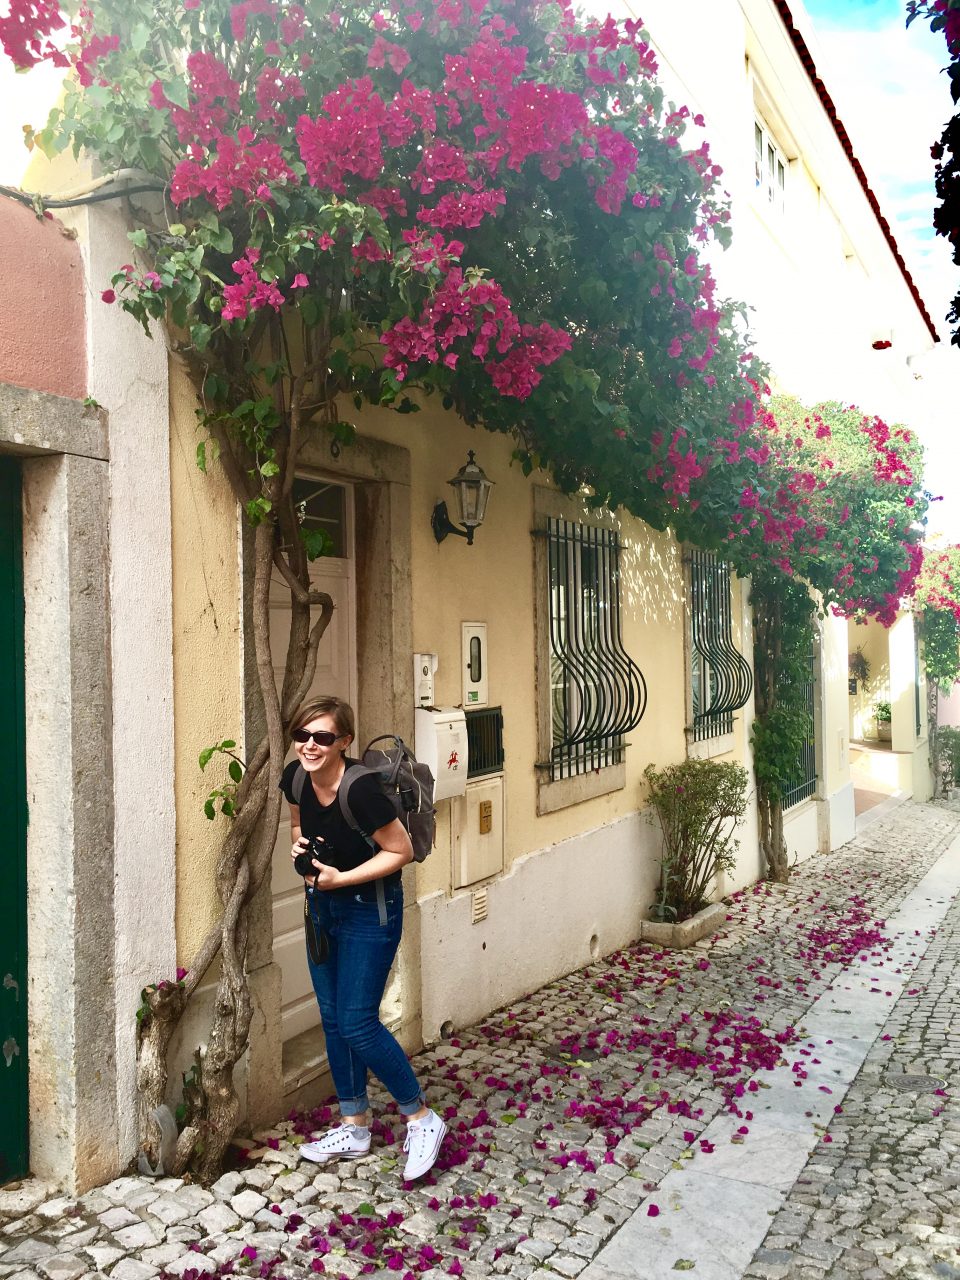 Архитектура также очаровала меня - красивые виллы и небольшие дома в ярких цветах, и извилистые, старые улицы, столь характерные для Португалии